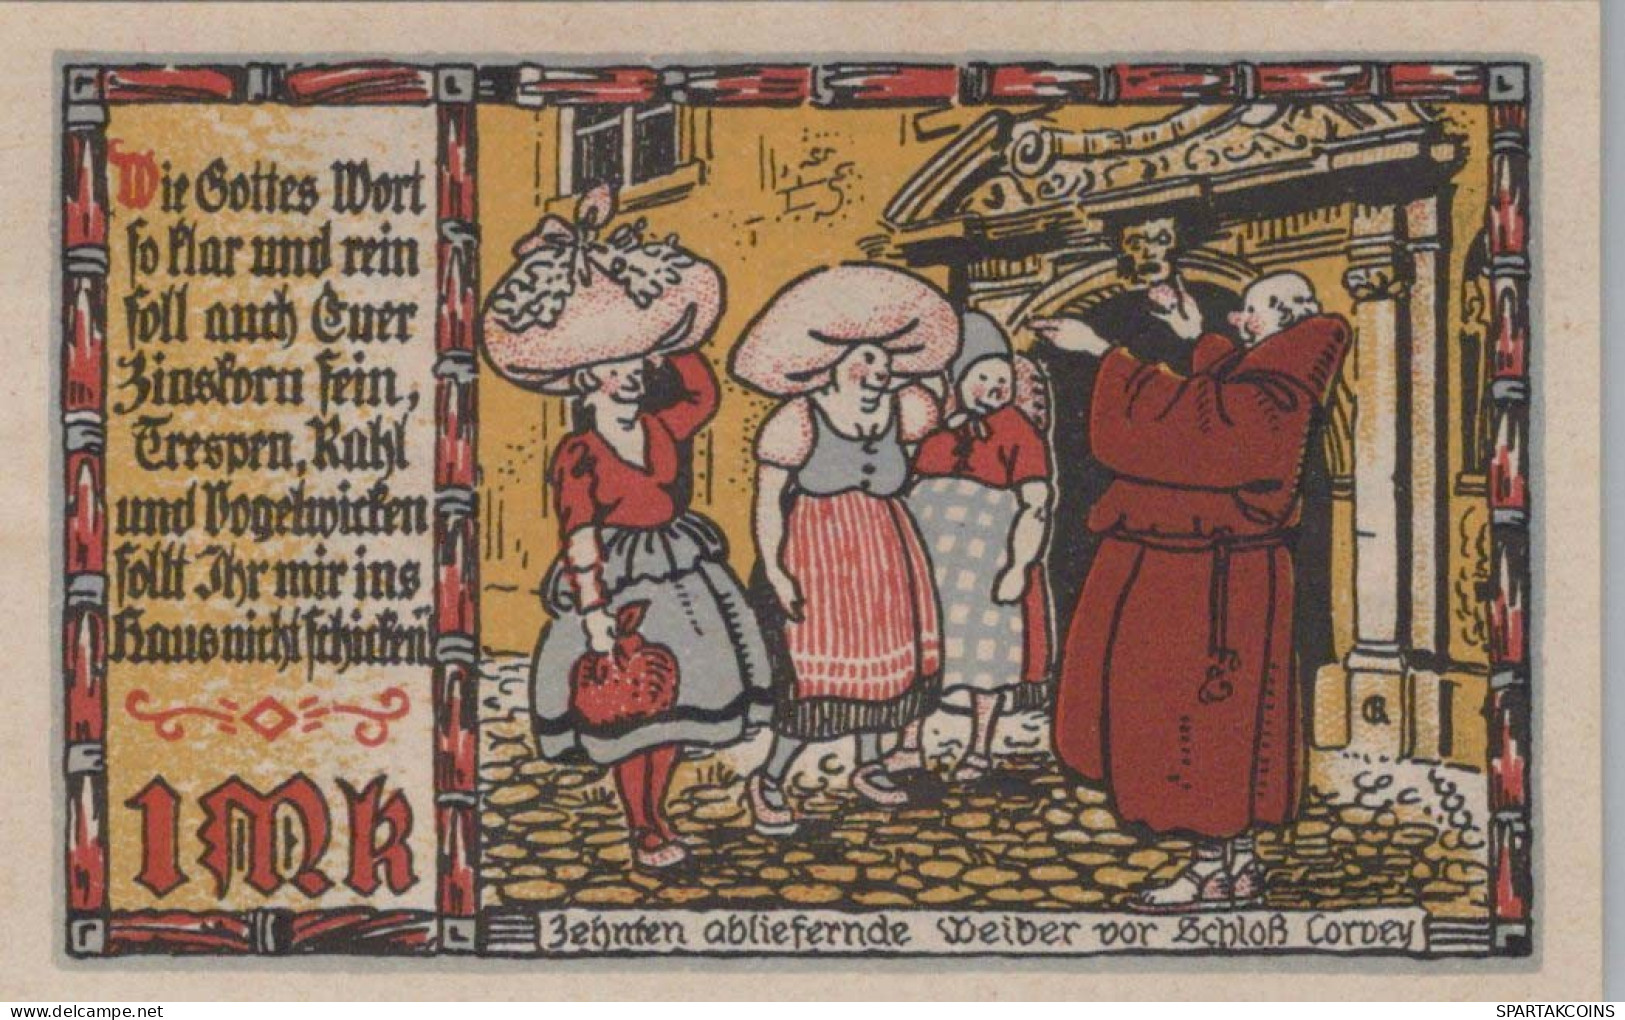 1 MARK 1922 Stadt LÜCHTRINGEN Westphalia UNC DEUTSCHLAND Notgeld Banknote #PC627 - [11] Local Banknote Issues